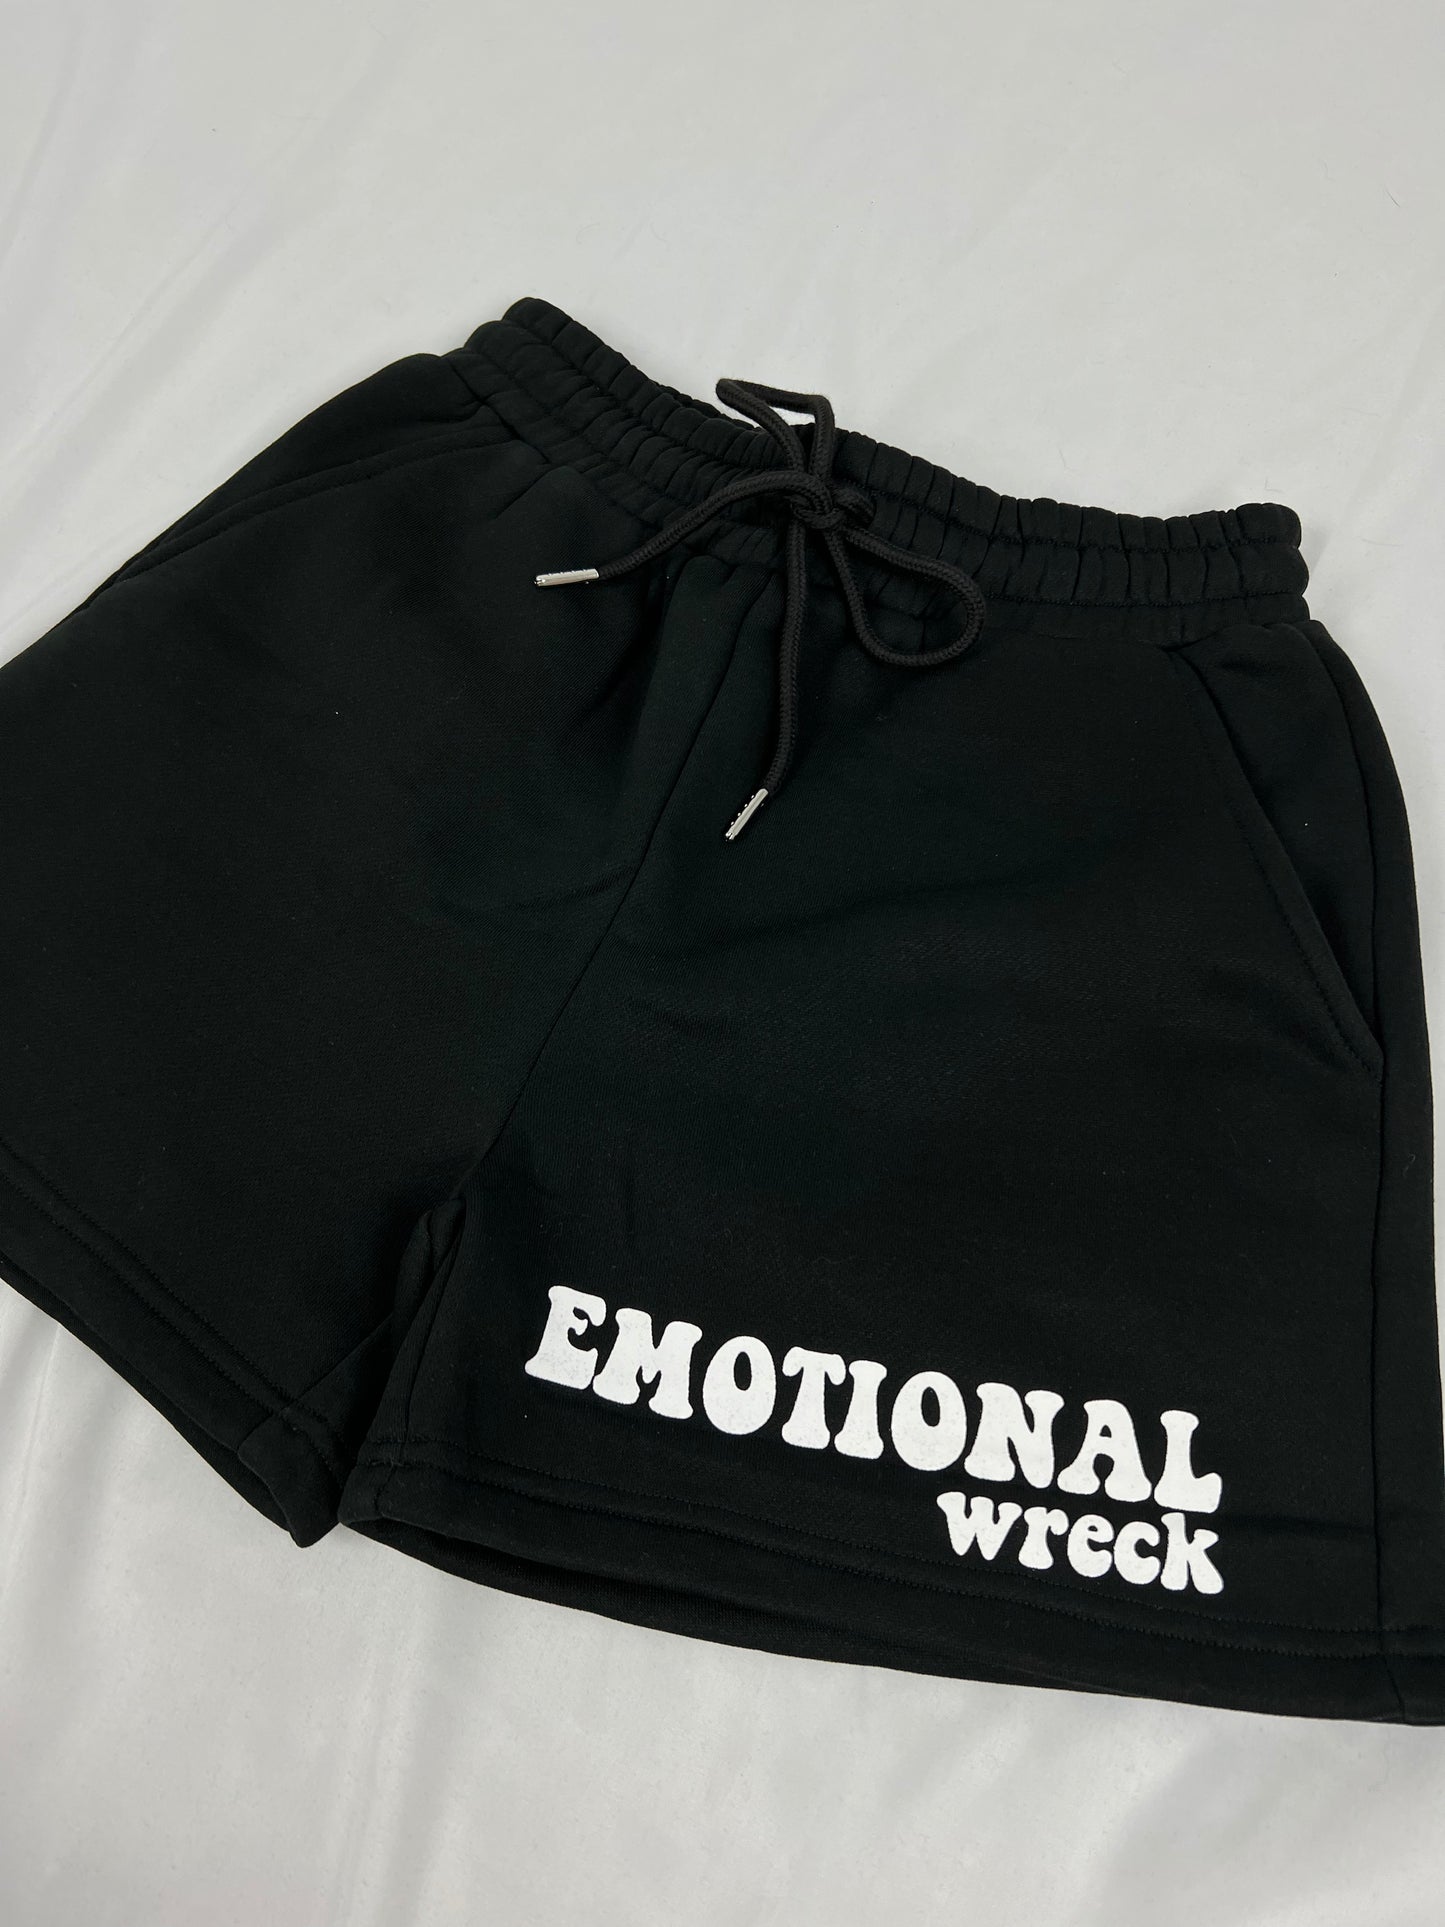 Black Emotional Wreck Sweat Shorts